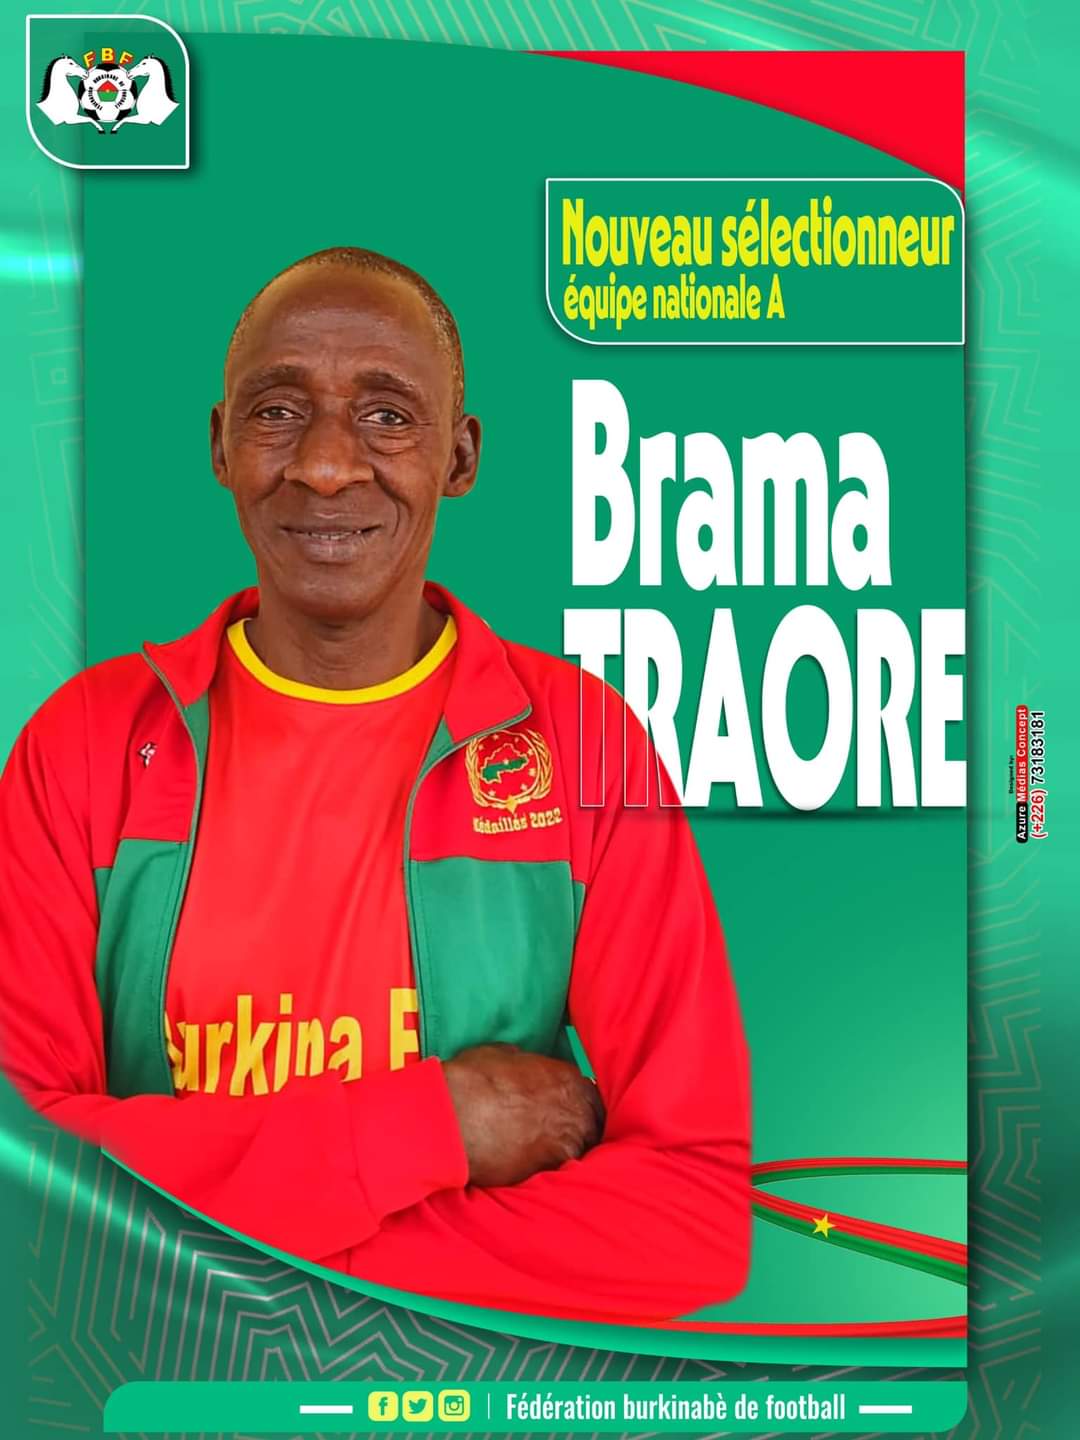 براما تراوري المدير الفني الجديد لبوركينا فاسو